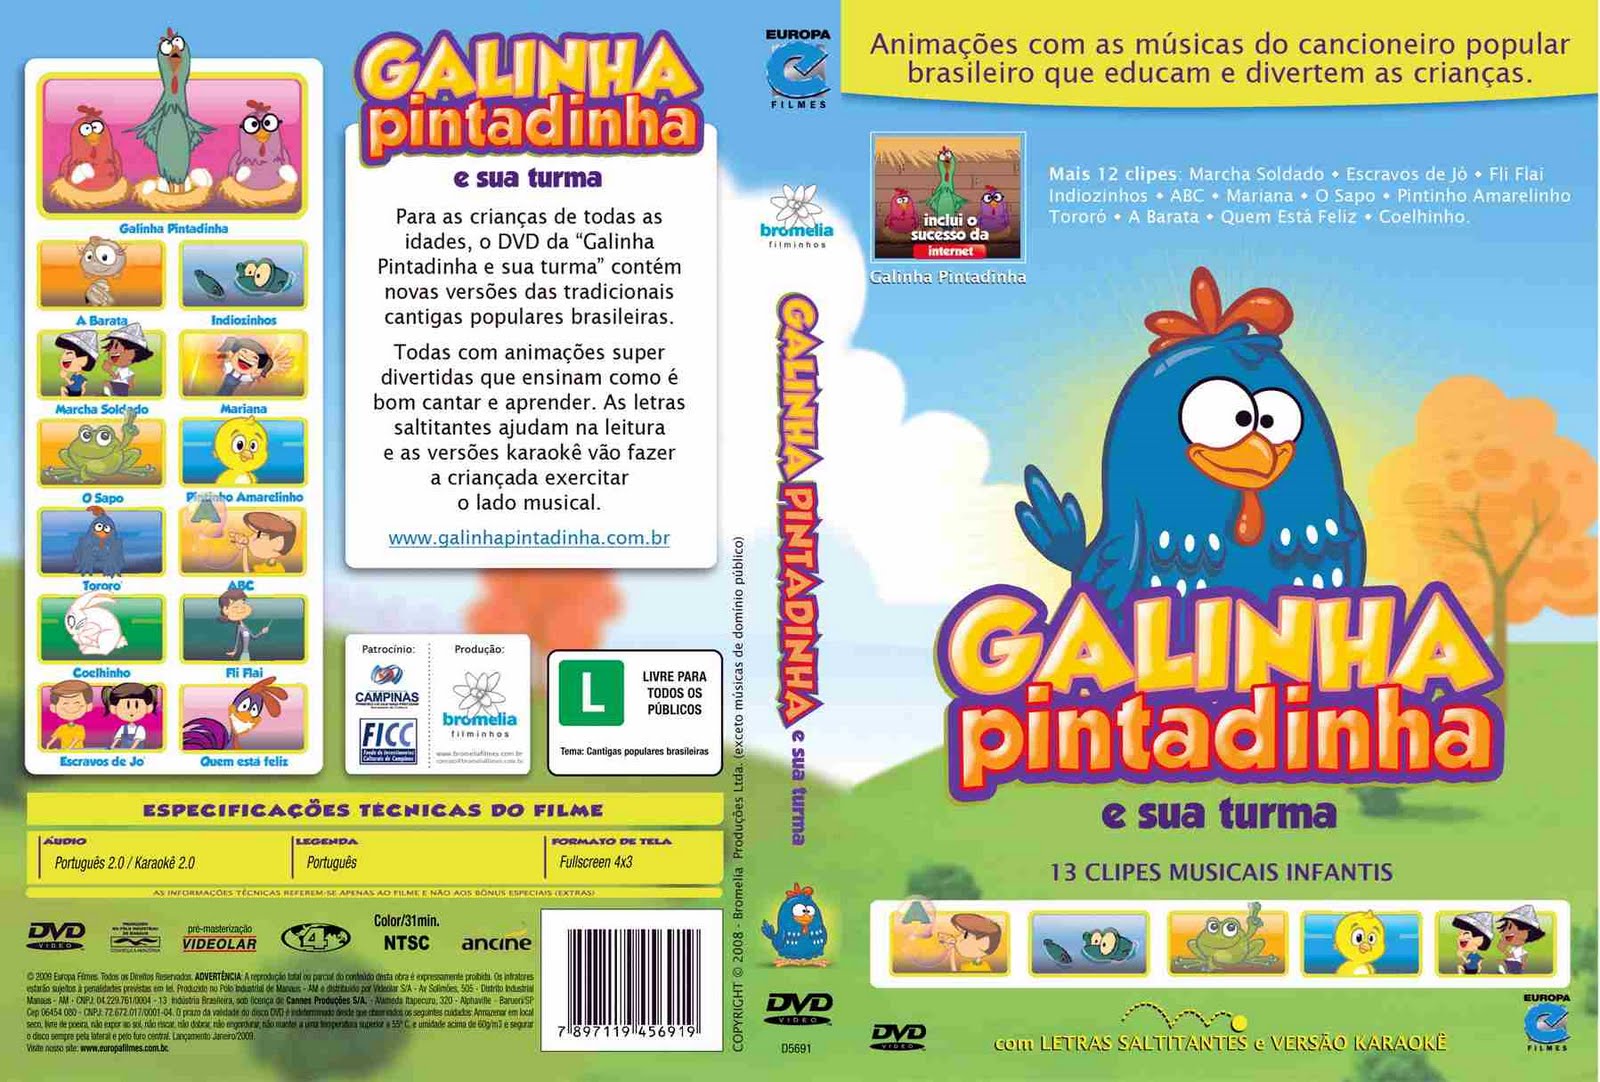 Galinha pintadinha e sua turma - dvd completo - crianças 2 on Vimeo